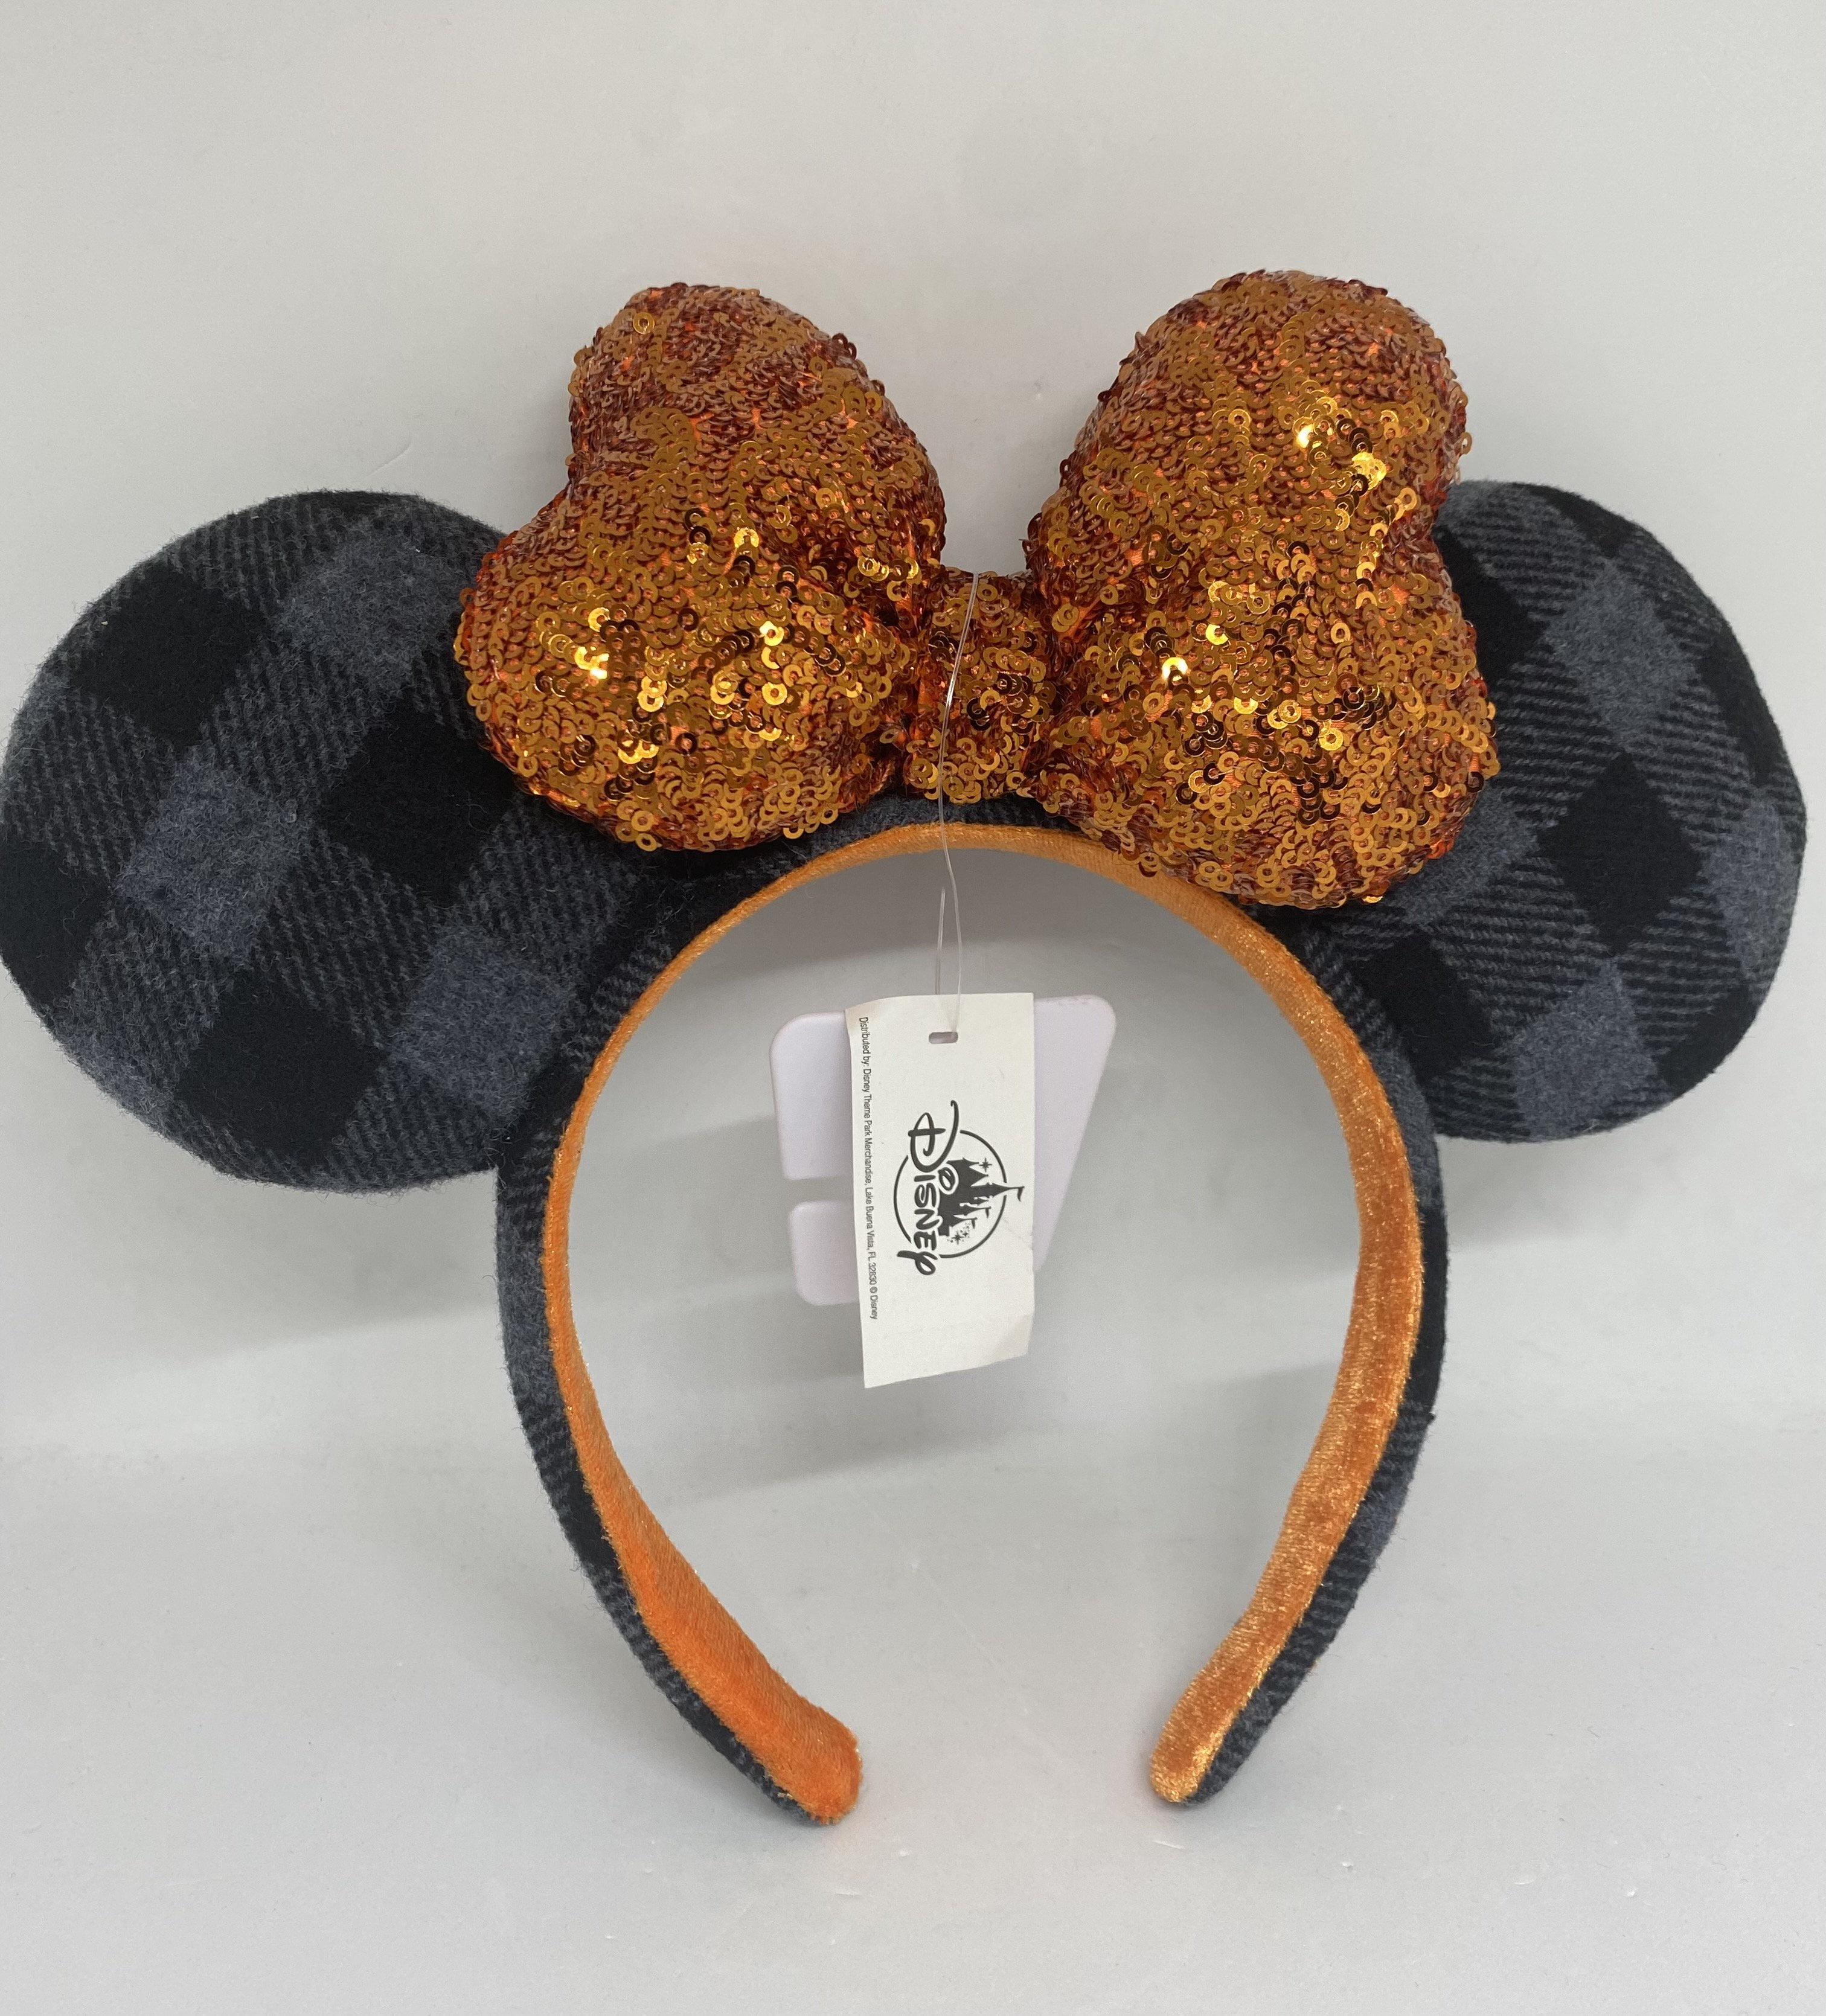 Halloween Mouse Ears Disney Headband Boo Headband Halloween Mouse Ears Headband One Size Fits Most. Halloween Headband